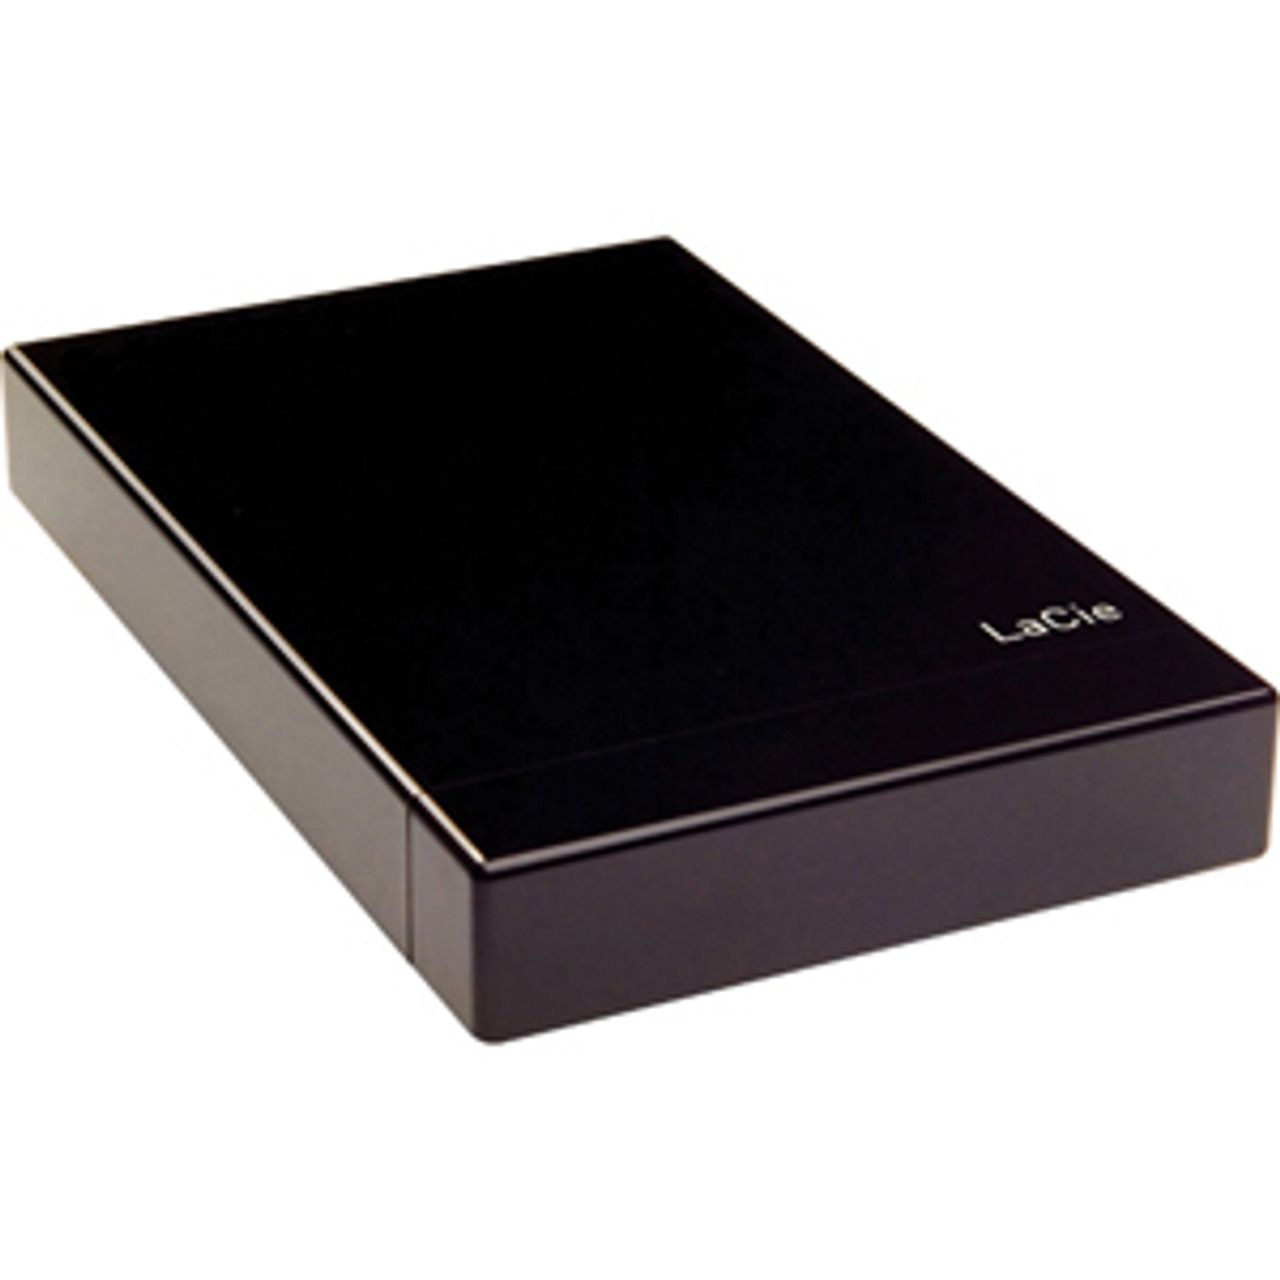 301276 - LaCie Little Disk 160 GB 2.5 External Hard Drive - USB 2.0 - 5400 rpm - 8 MB Buffer